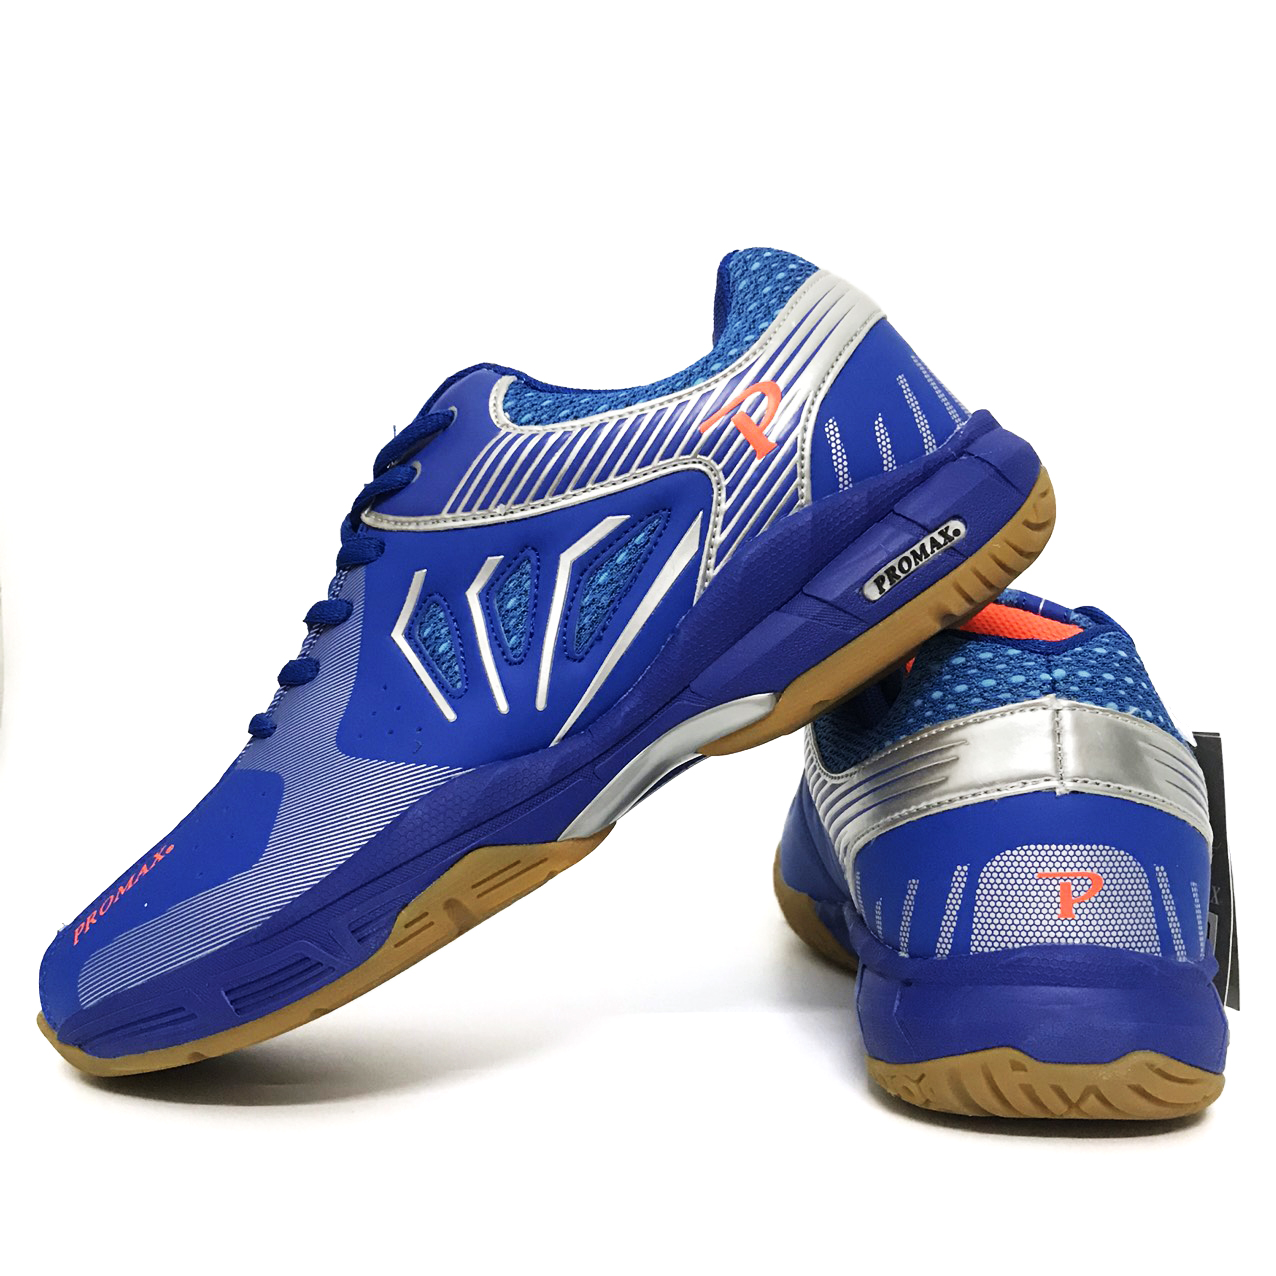 Giày bóng chuyền Promax PR20001 chính hãng